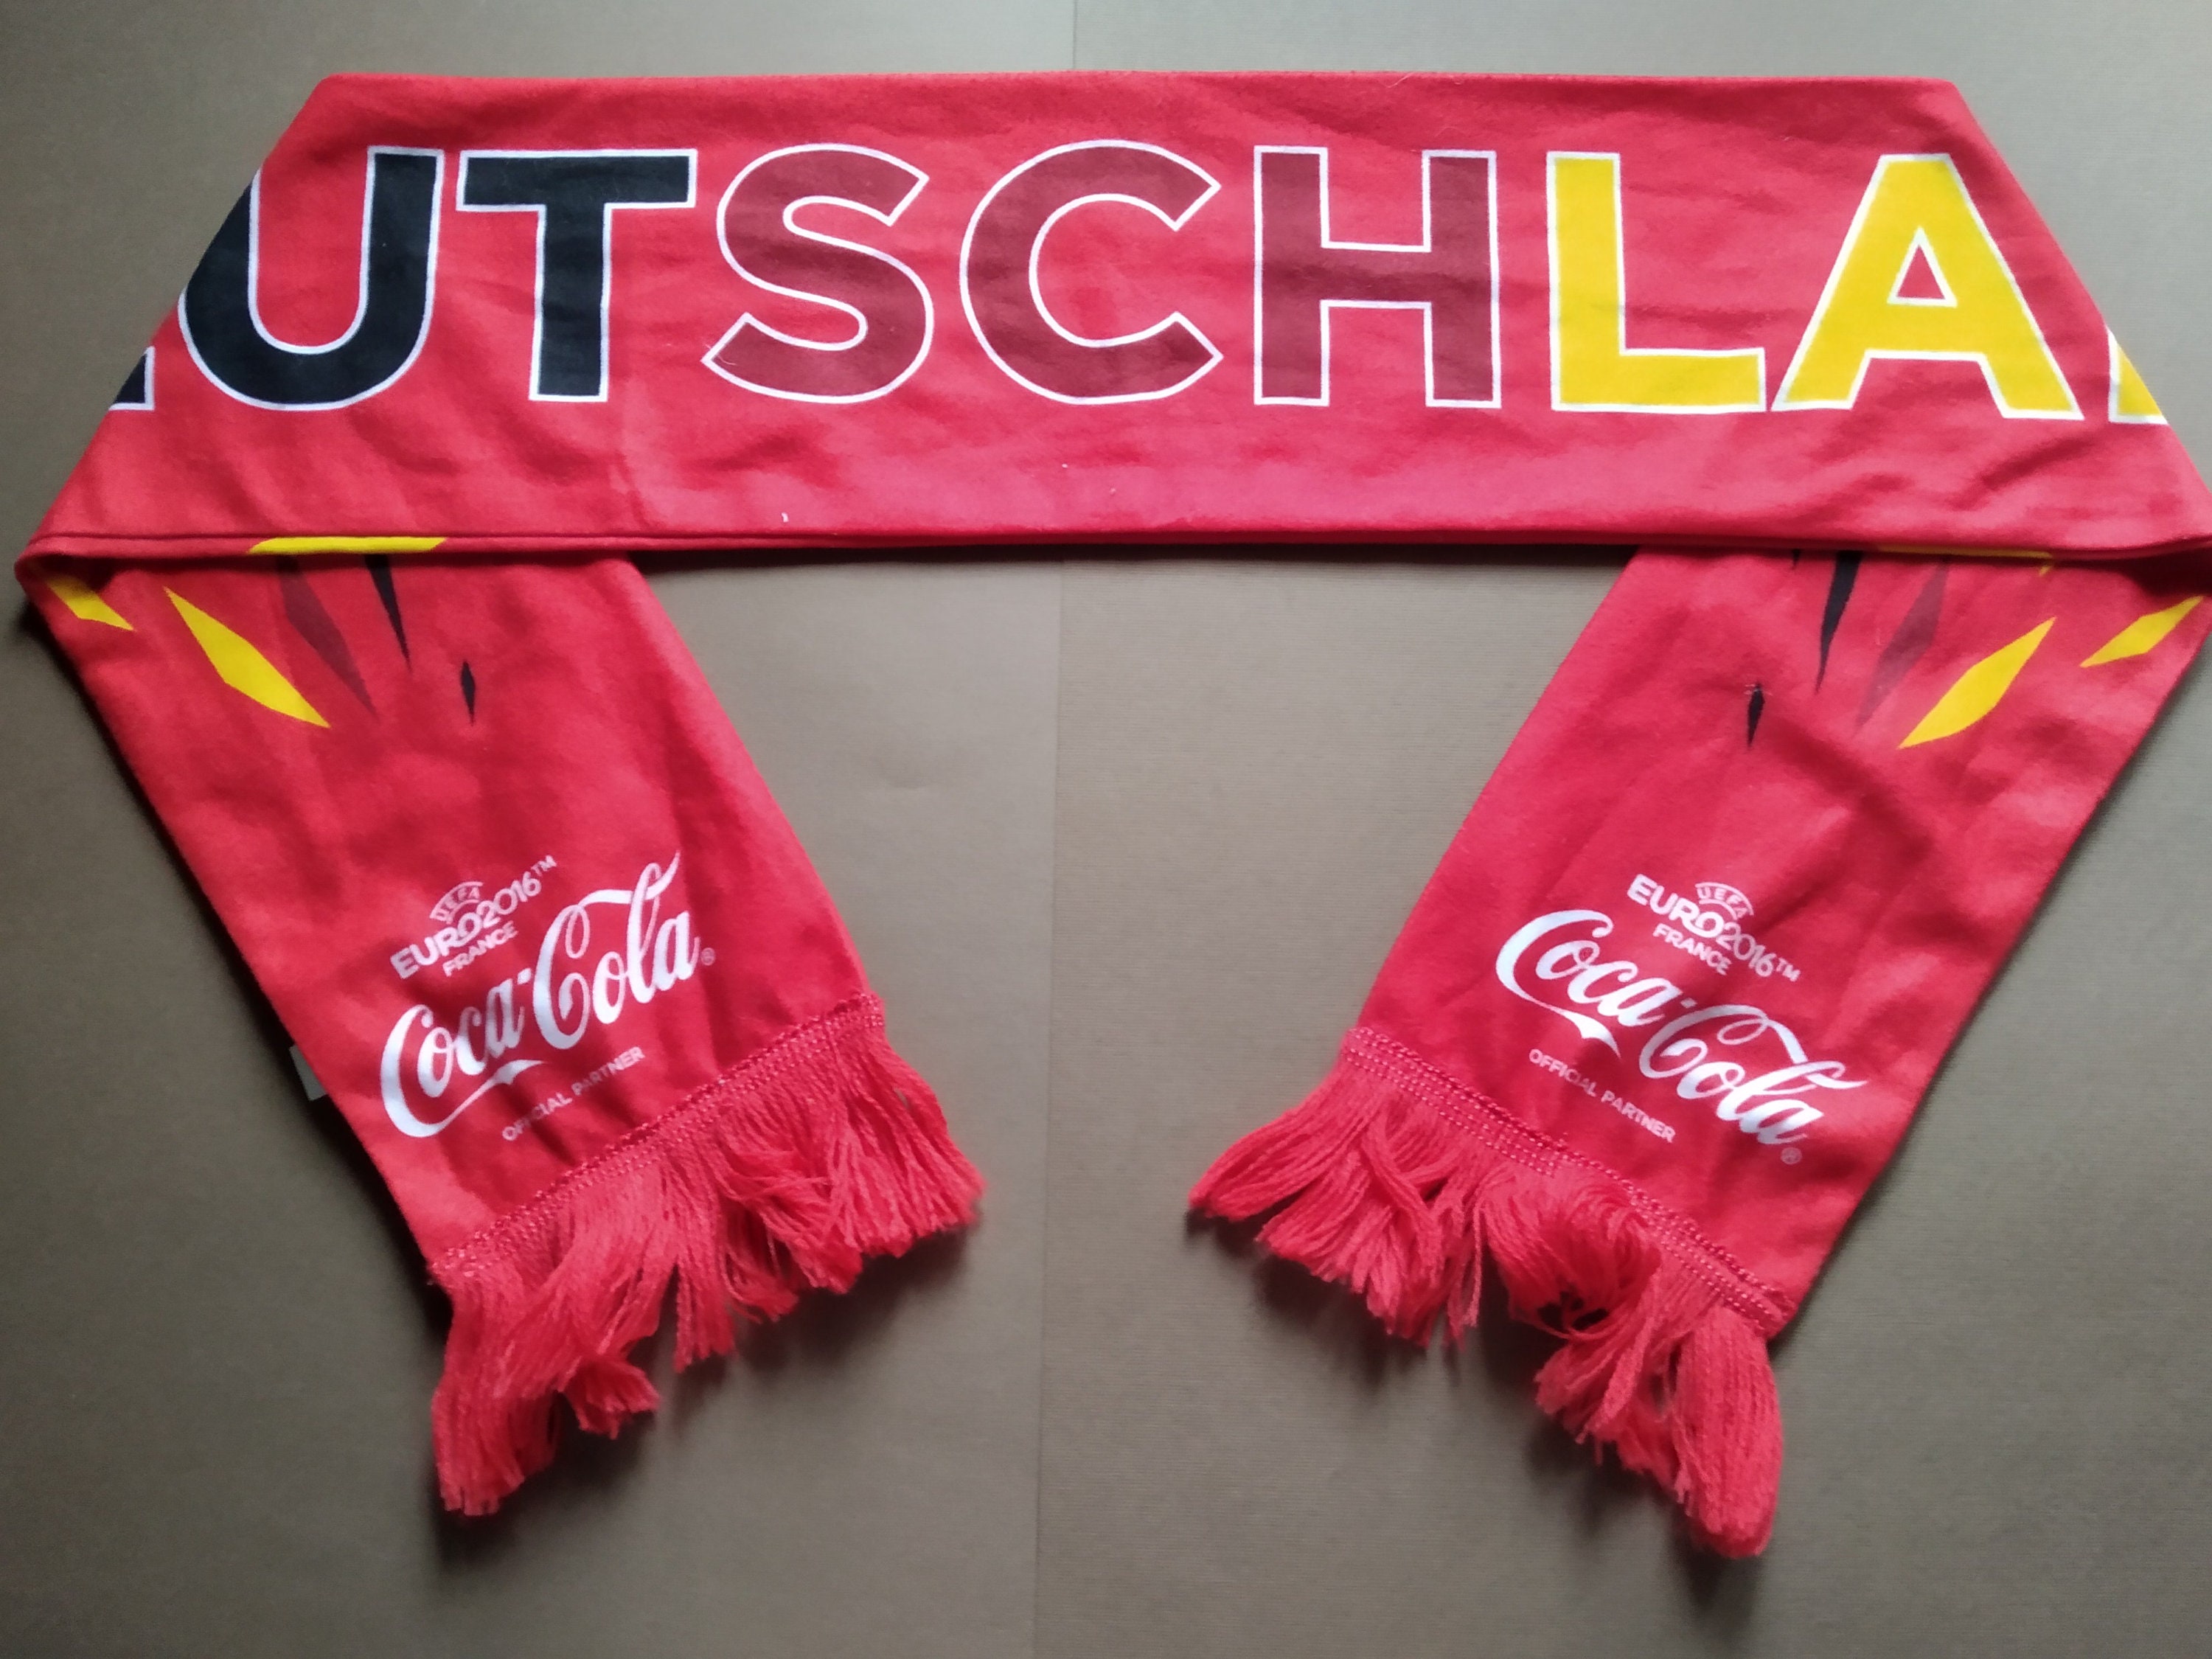 Deutschland Fußball Nationalteam Schal,EURO 2016 Frankreich,Coca Cola,Deutsche  Fußball Schals,Vintage Schal,Fußball Schals für Fans,Bundesteam. - .de